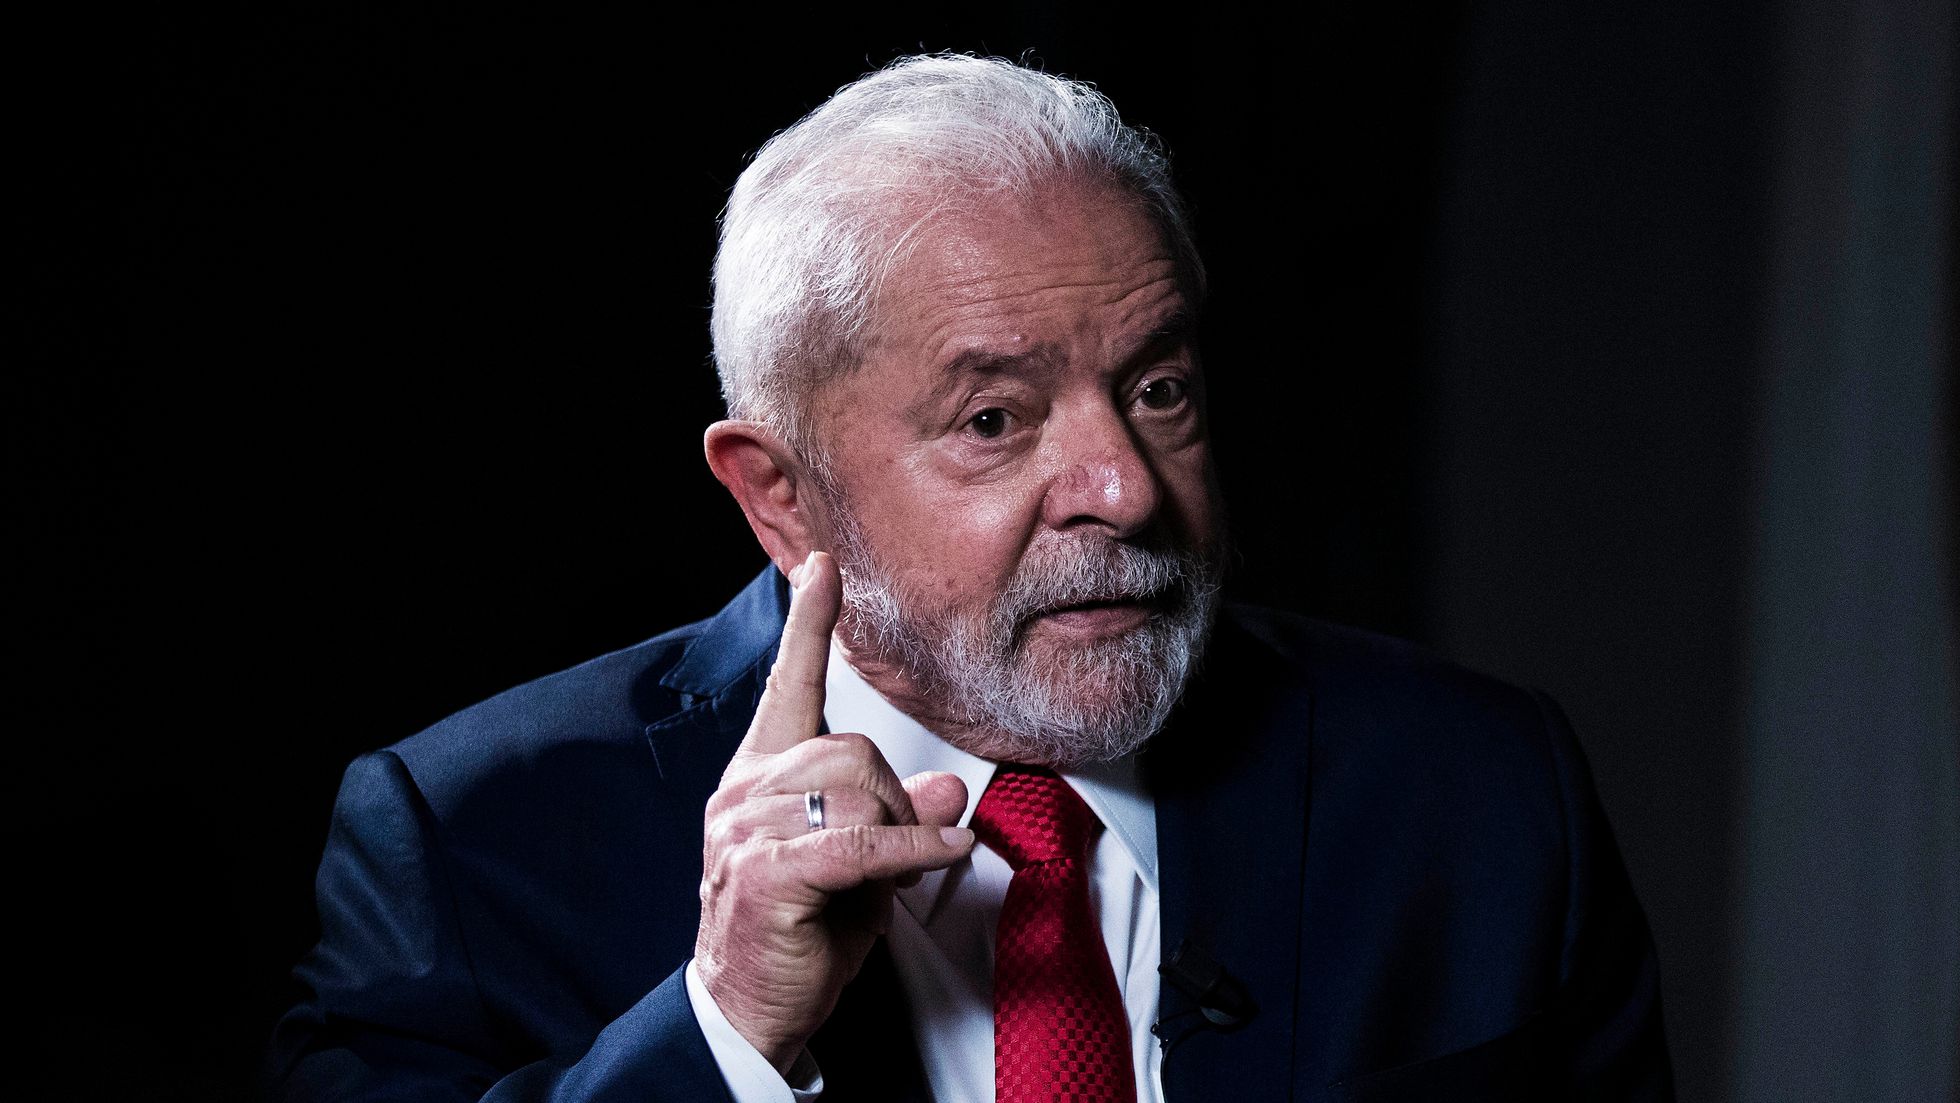 Lula critica l'intelligence brasiliana: "L'8 gennaio non mi hanno avvisato del pericolo imminente"